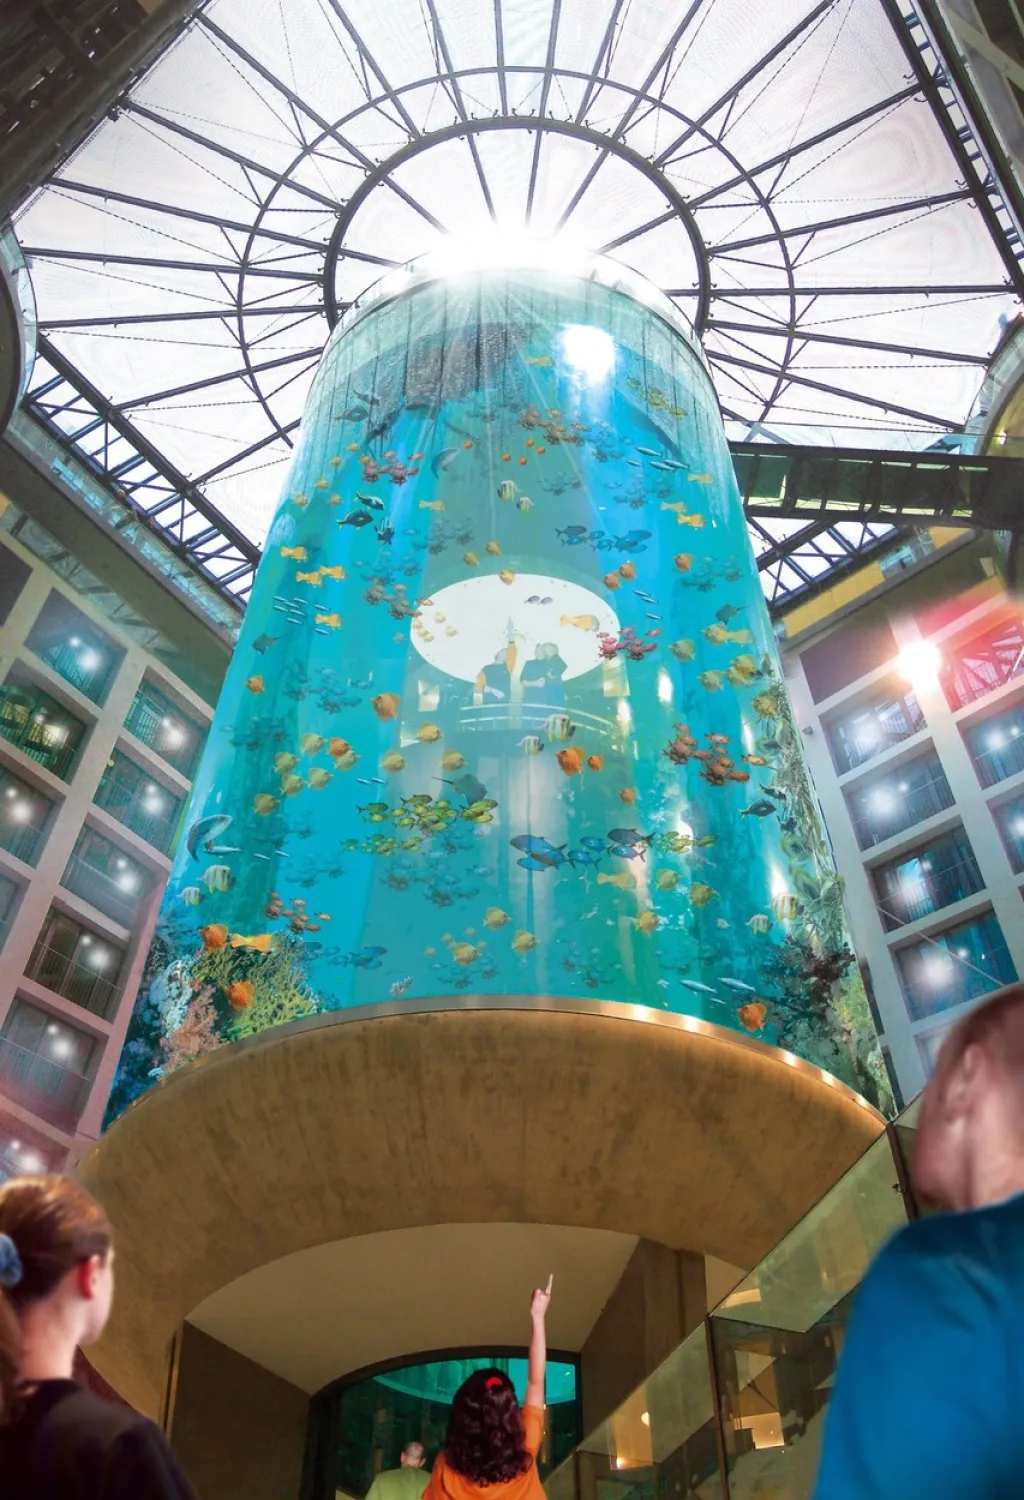 V Berlíně prasklo obří akvárium